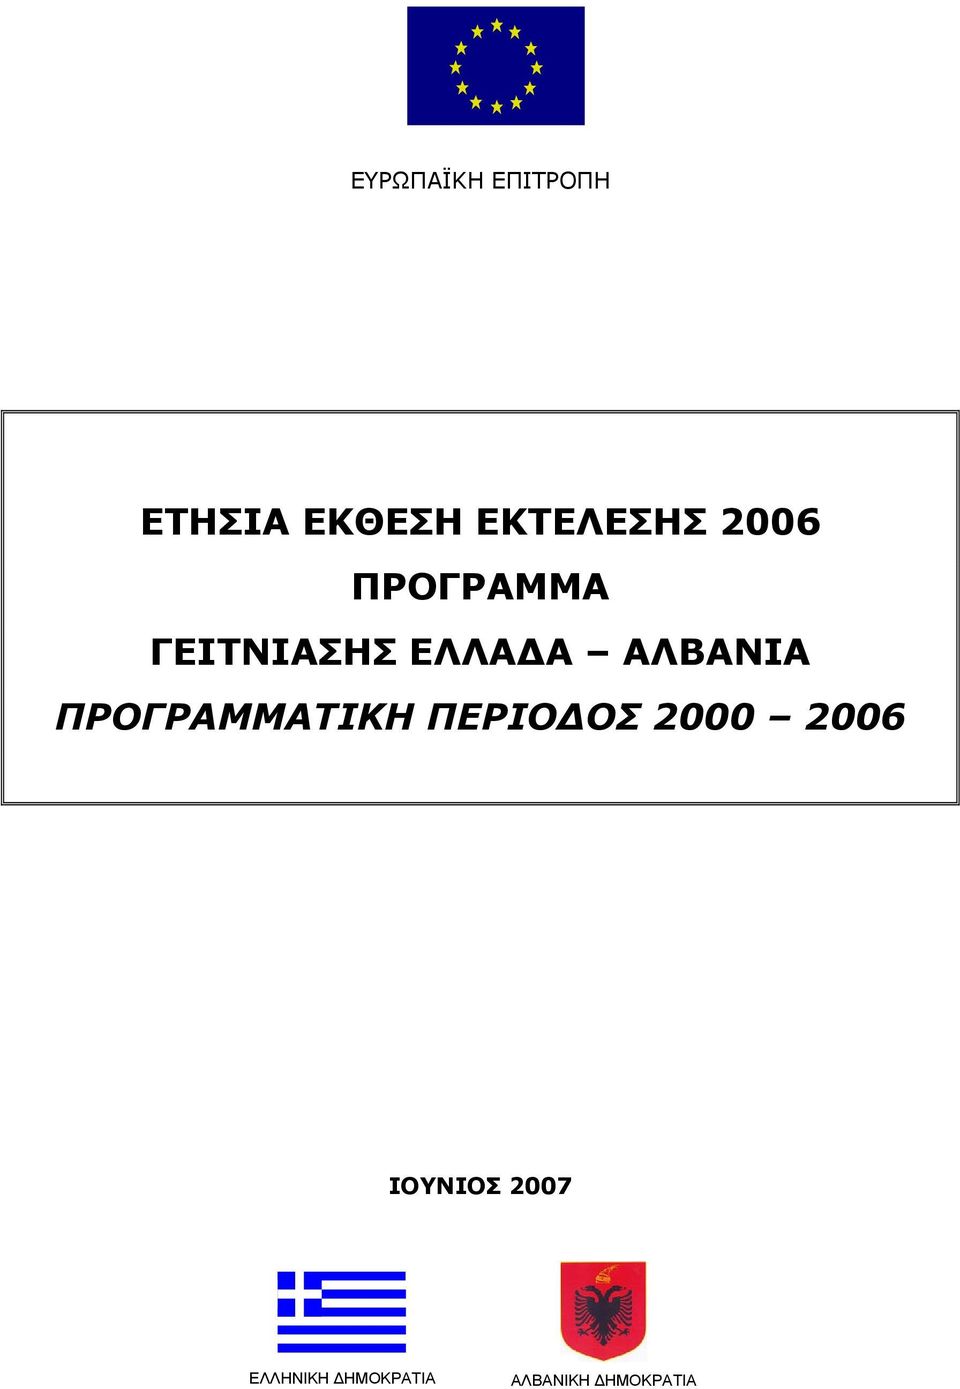 ΠΡΟΓΡΑΜΜΑΤΙΚΗ ΠΕΡΙΟΔΟΣ 2000 2006 ΙΟΥΝΙΟΣ